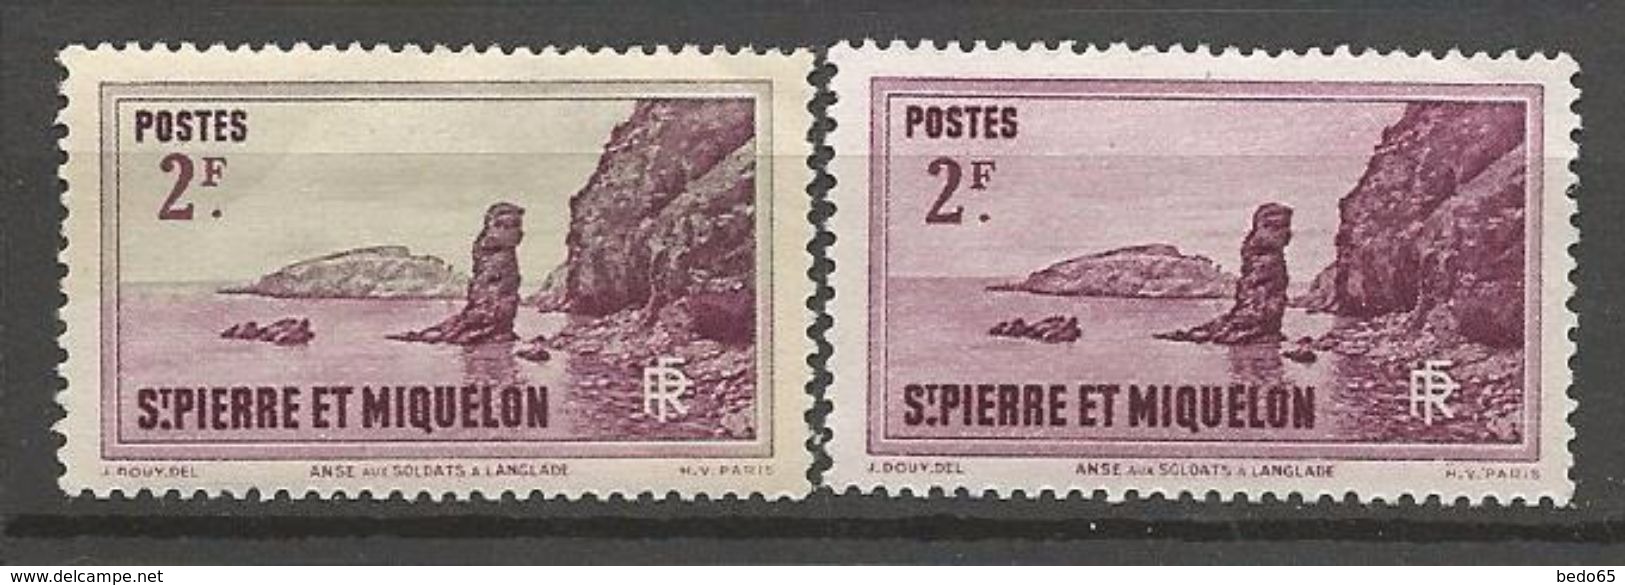 ST PIERRE ET MIQUELON  N° 184 VARIETEE SUR LA COULEUR NEUF*  CHARNIERE / MH - Unused Stamps